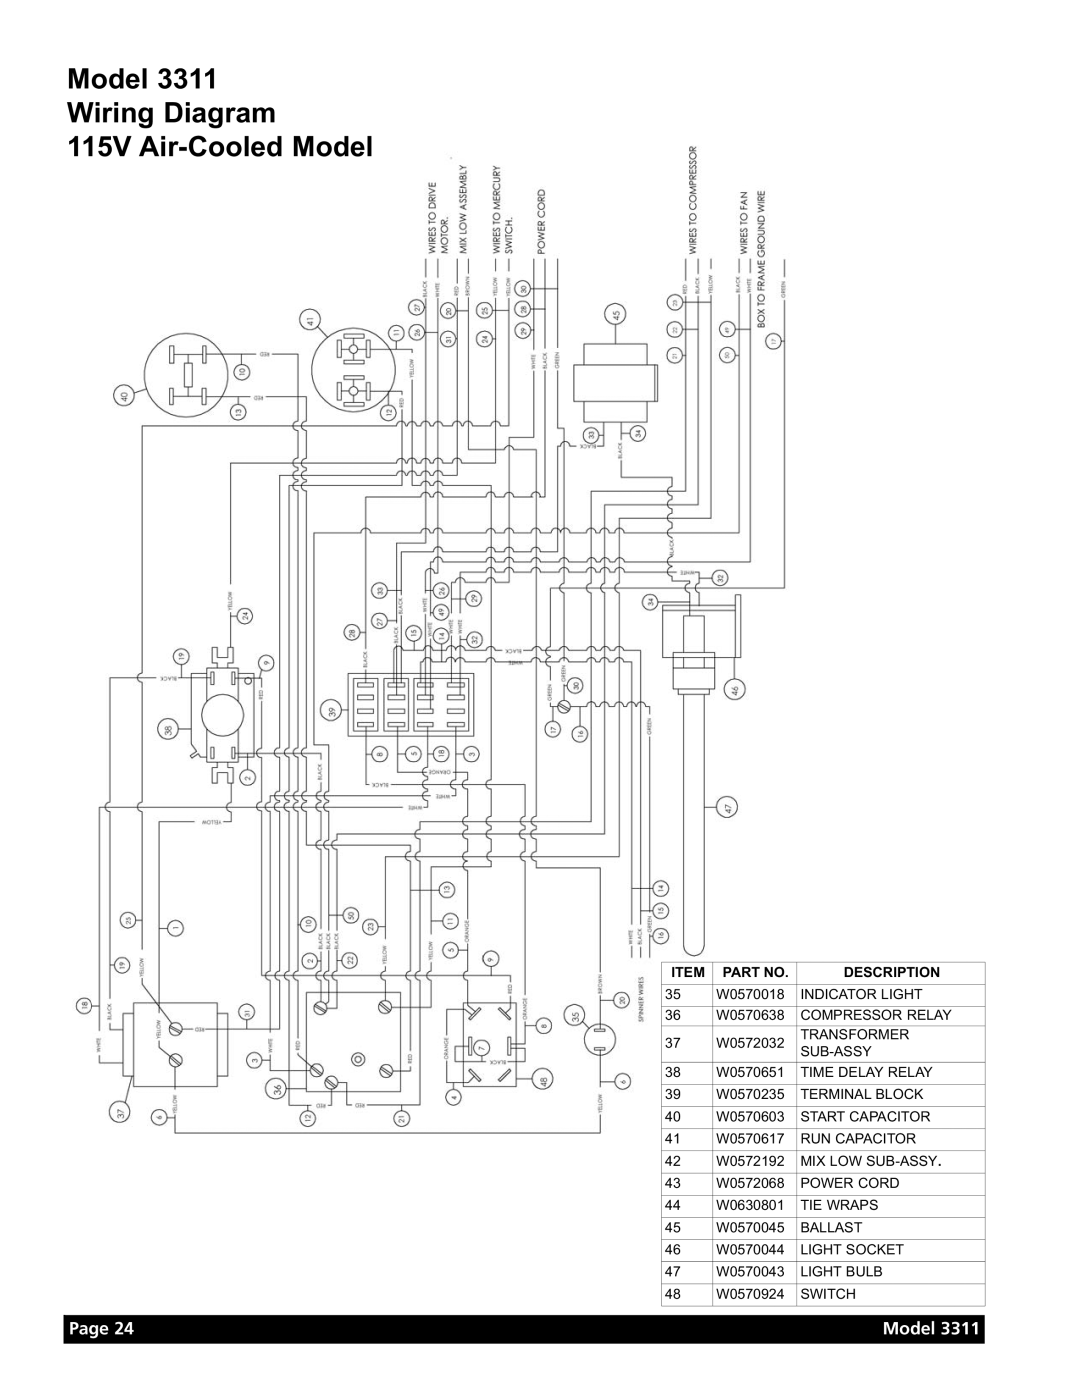 Grindmaster Model 3311 manual Model Wiring Diagram 115V Air-Cooled Model, Page, Description 